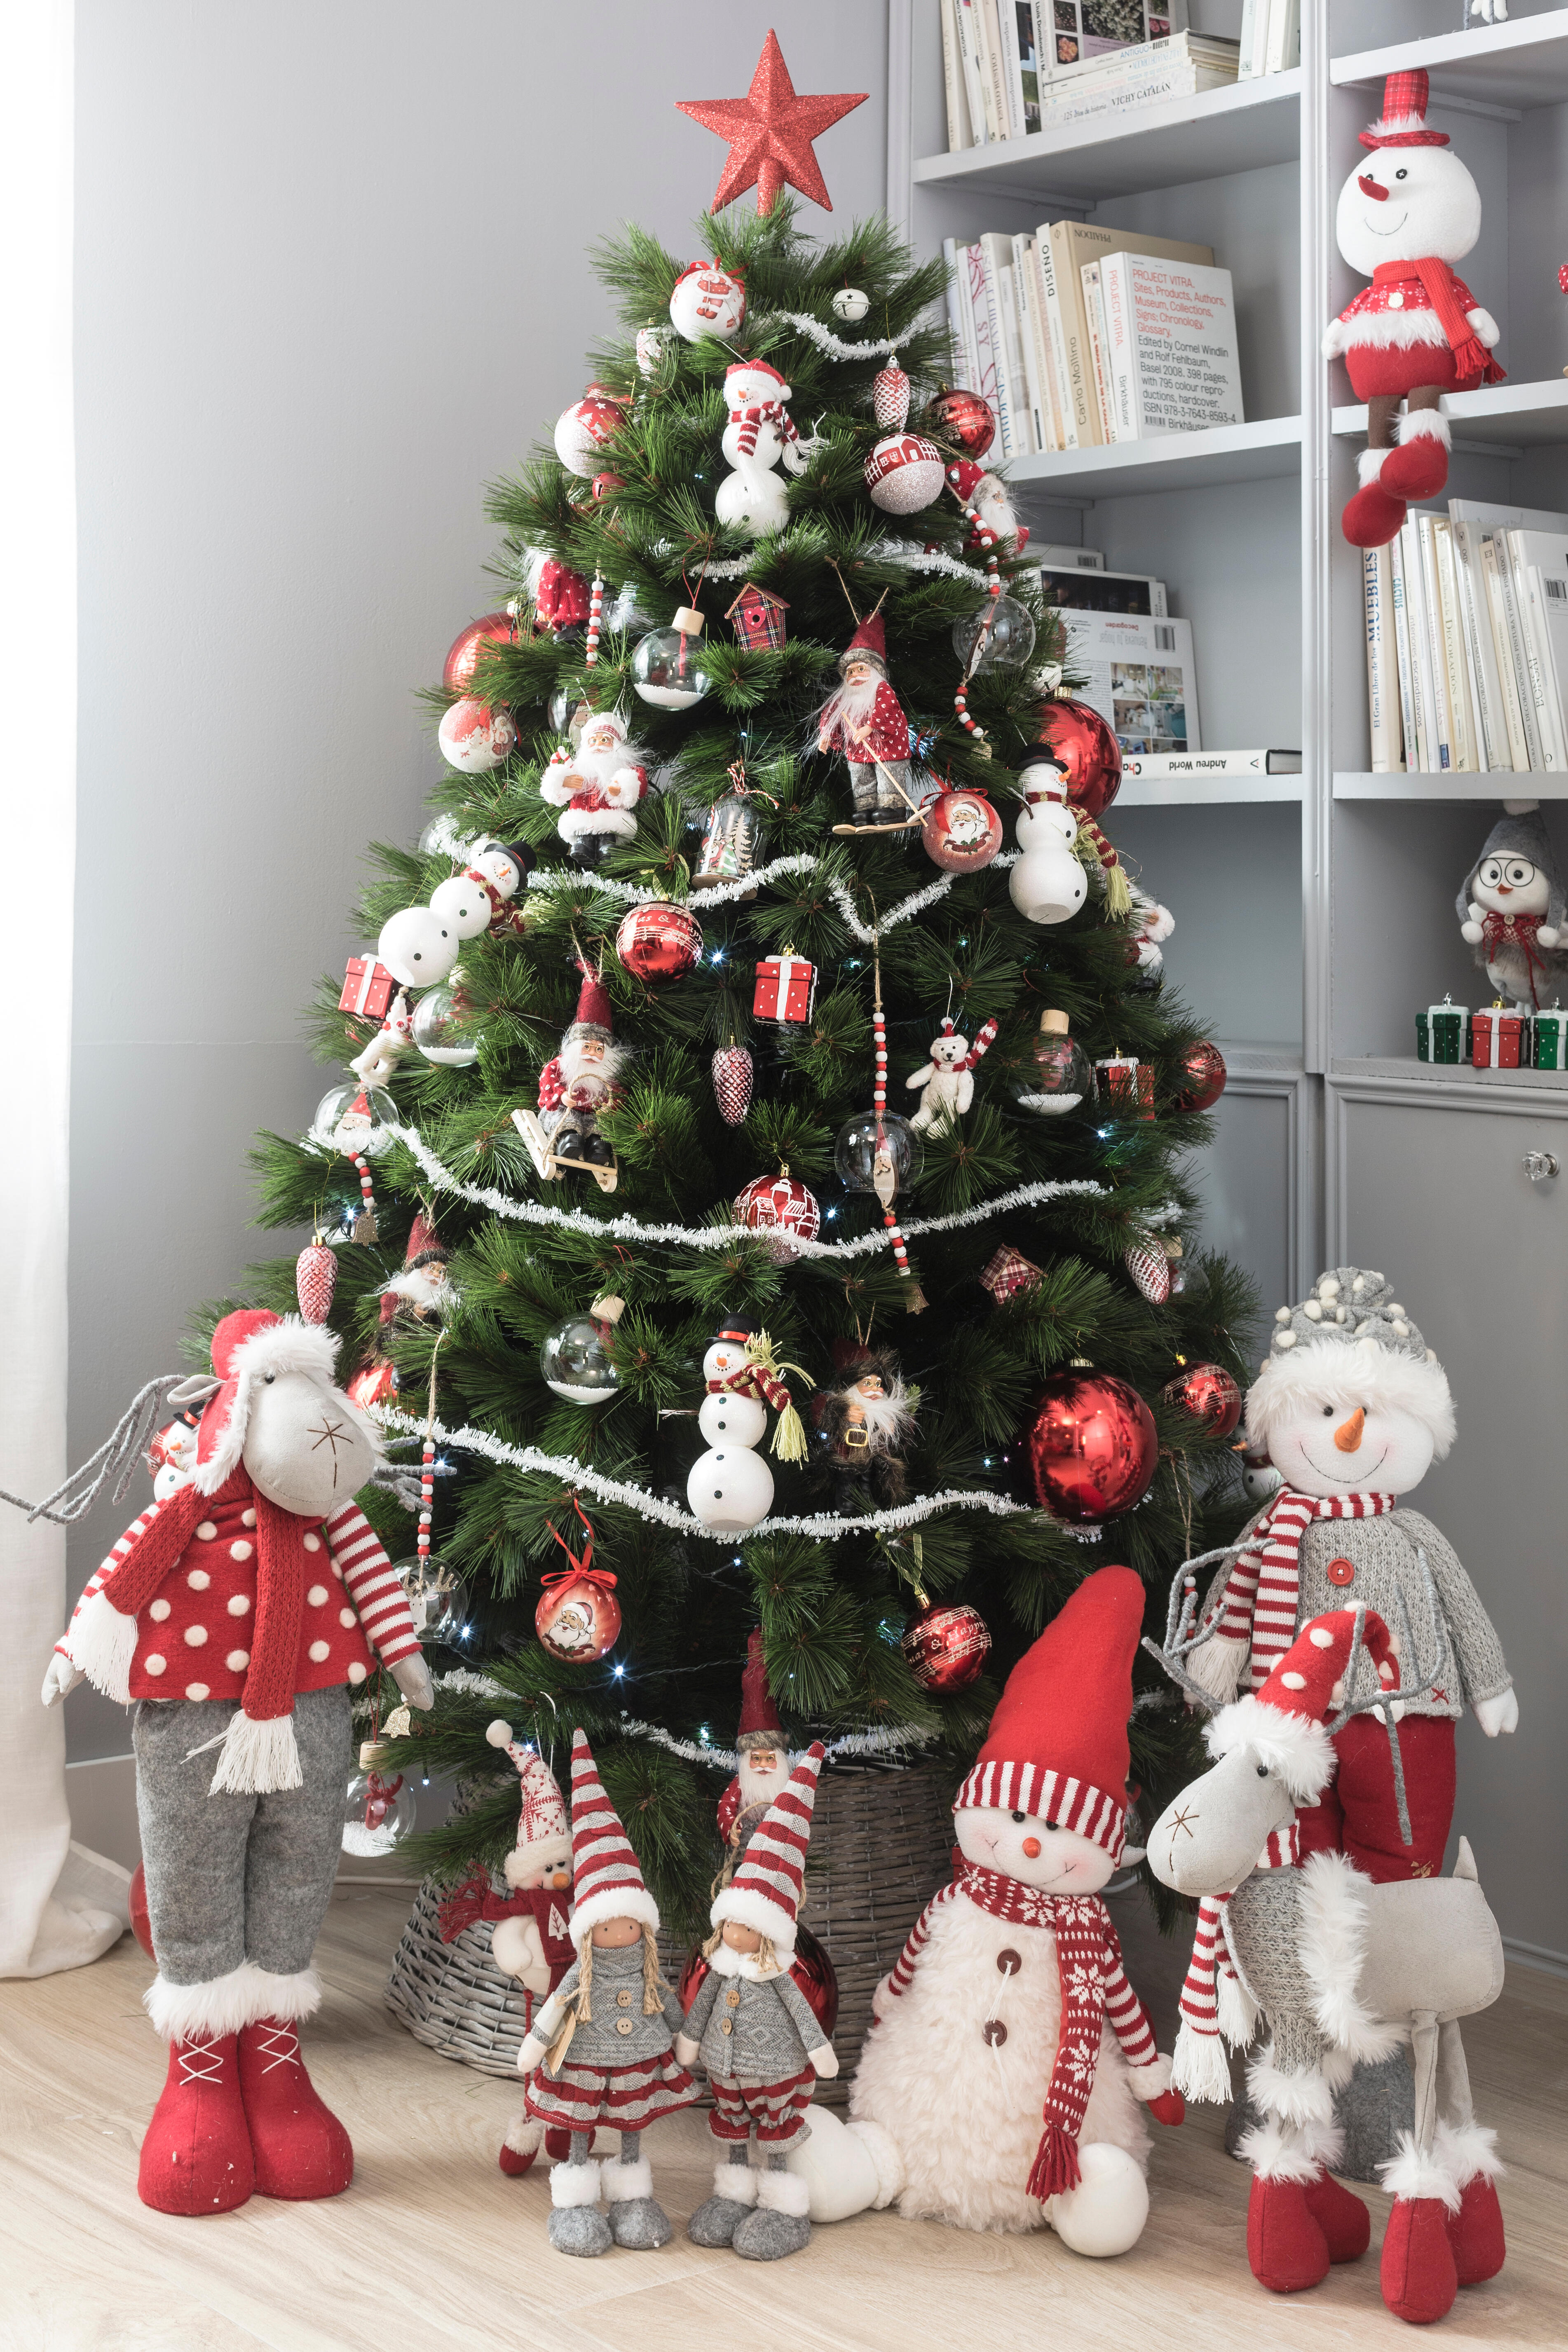 Cómo montar y decorar un árbol de Navidad | Leroy Merlin